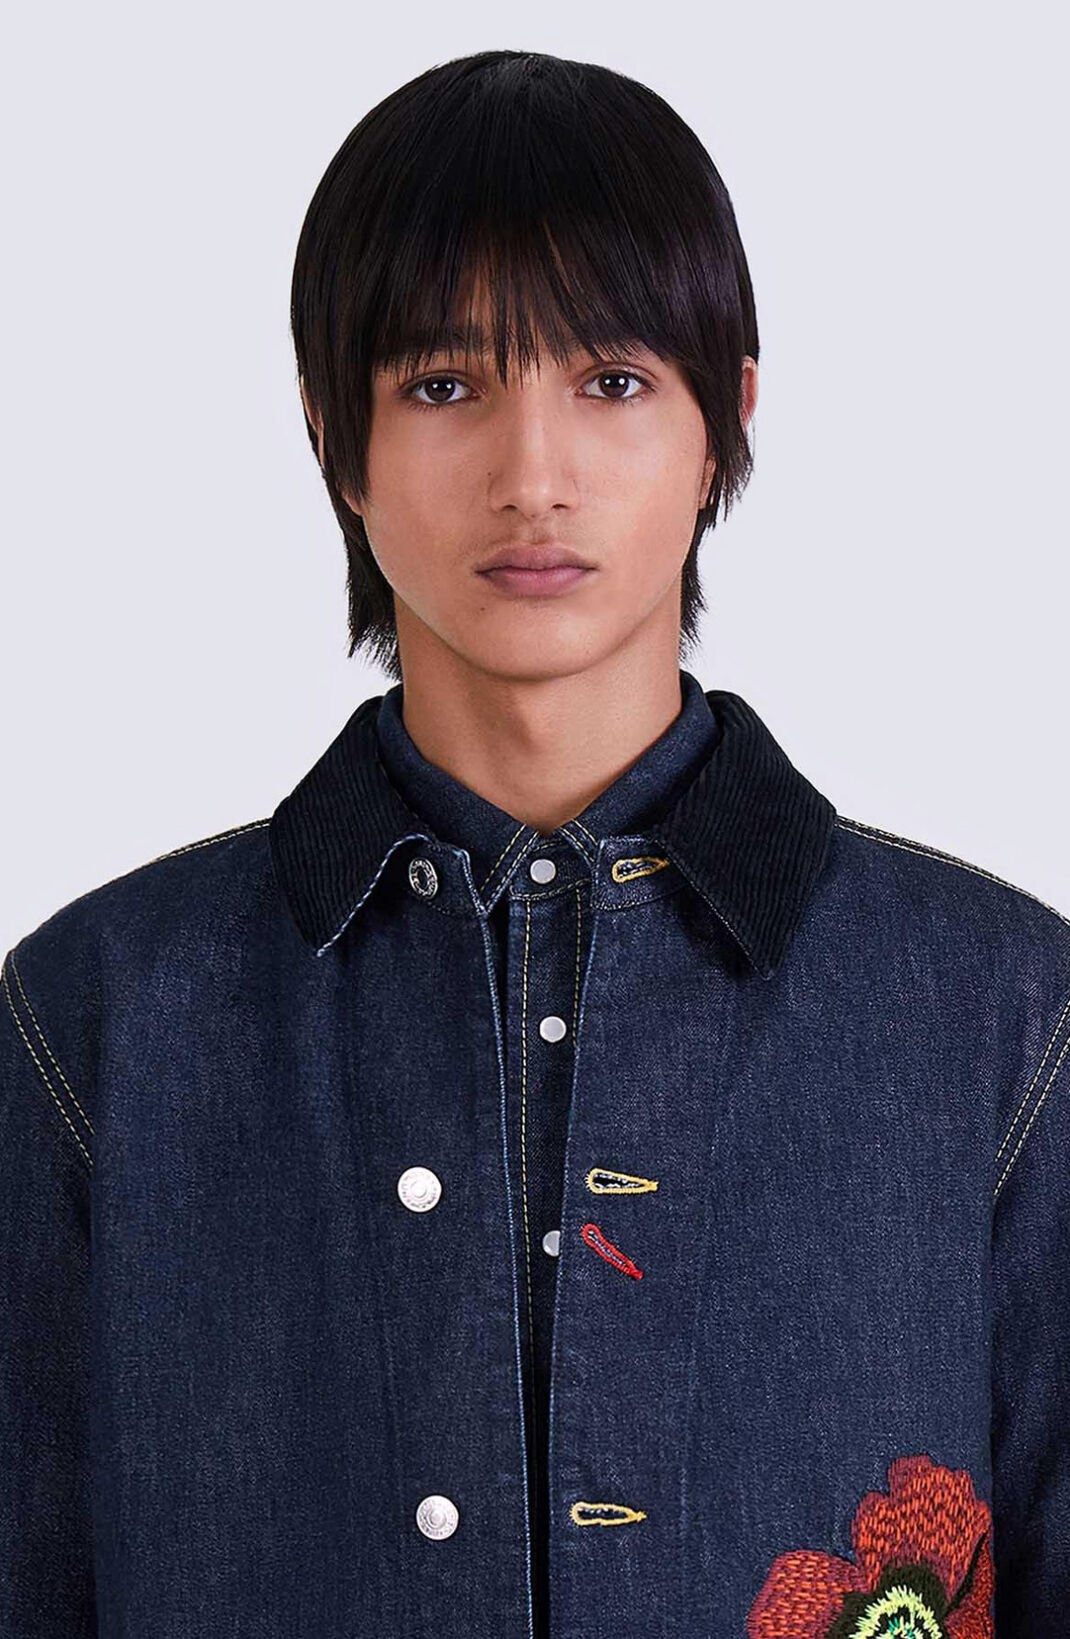 Kenzo Men's Poppy Denim Workwear Jacket